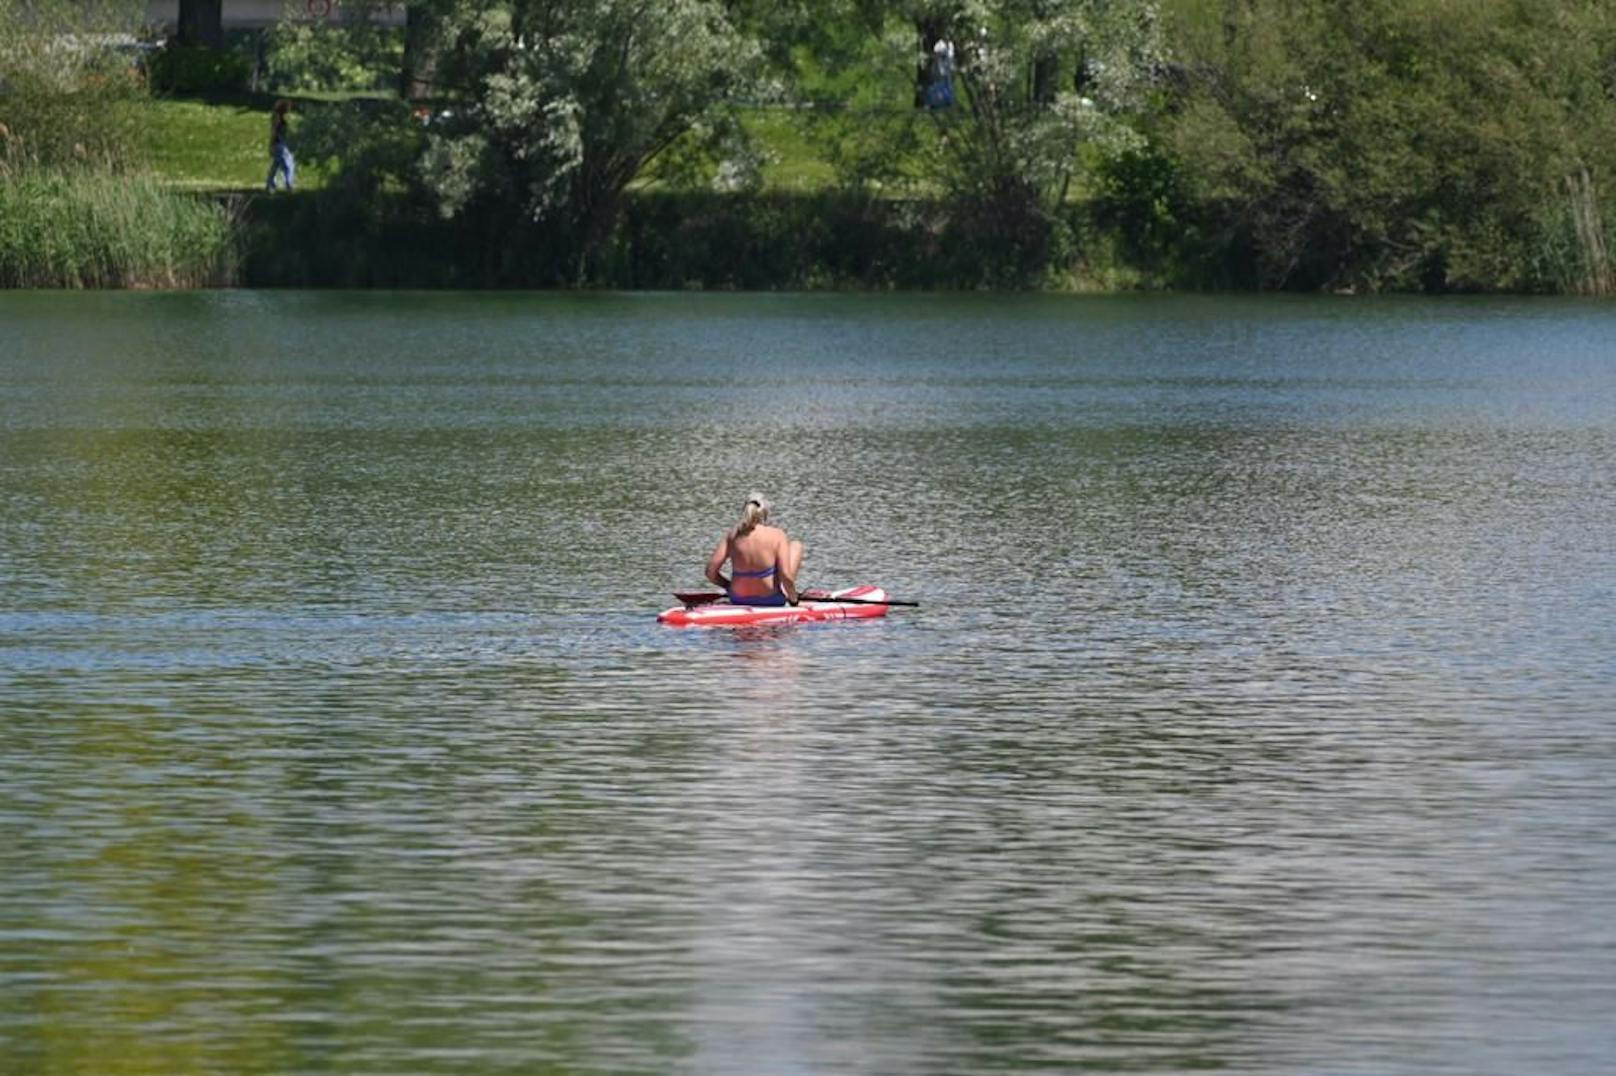 Sommerliche Temperaturen lockten die Besucher an die Seen, in die Seen gingen aber nur wenige.